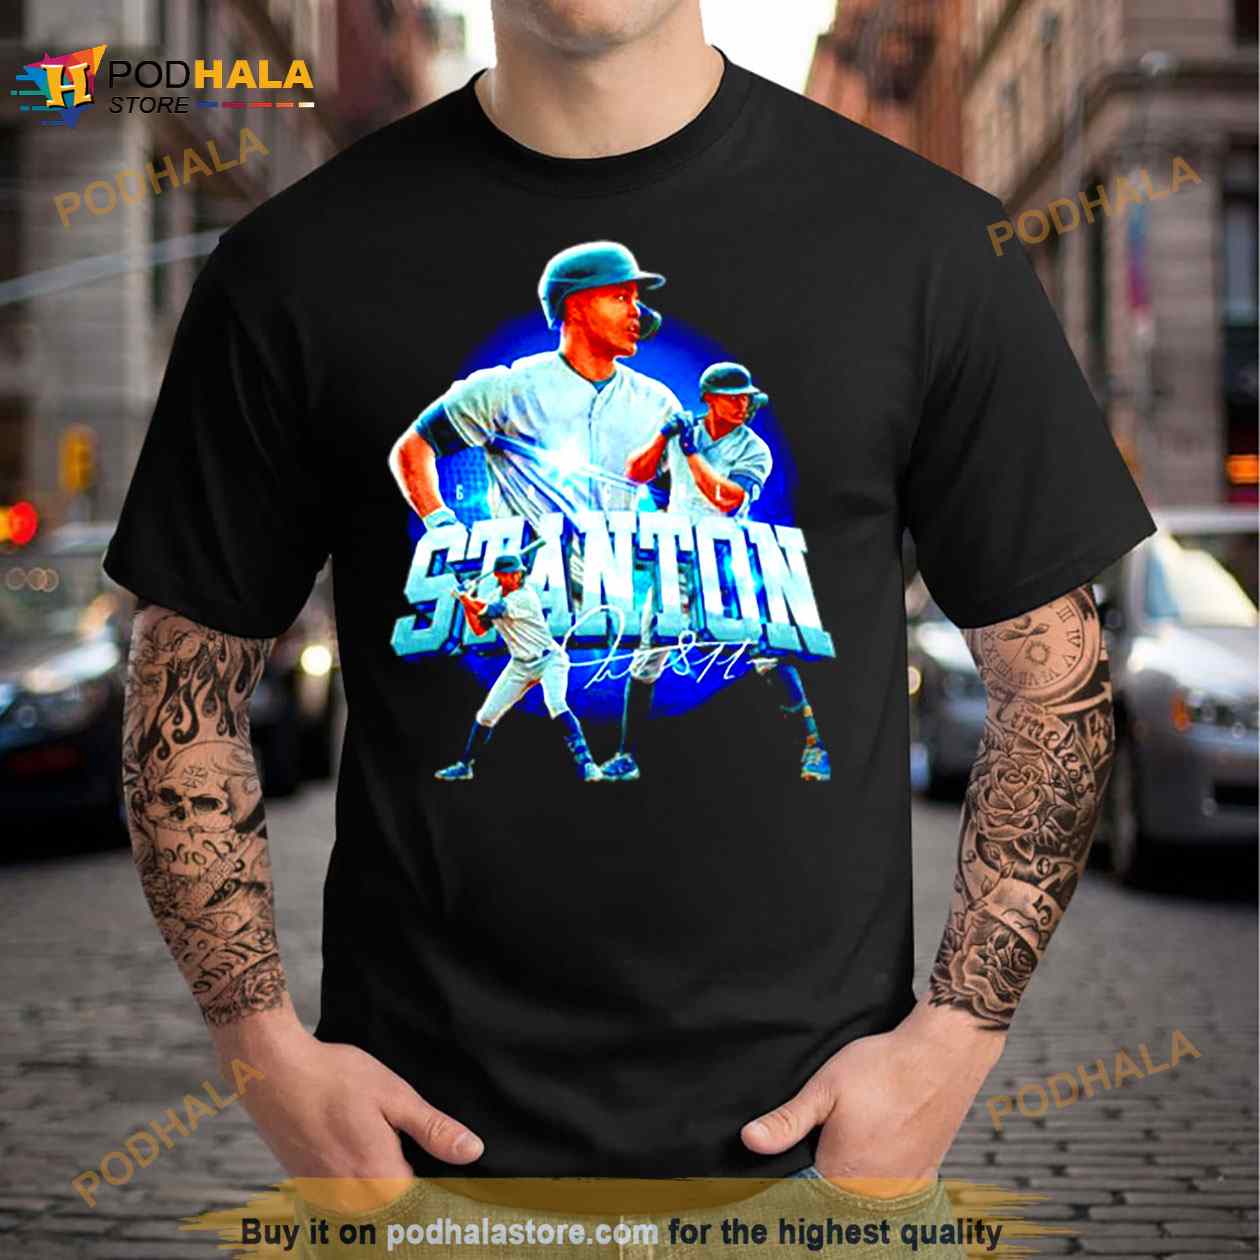 Yankees Custom Shirt 